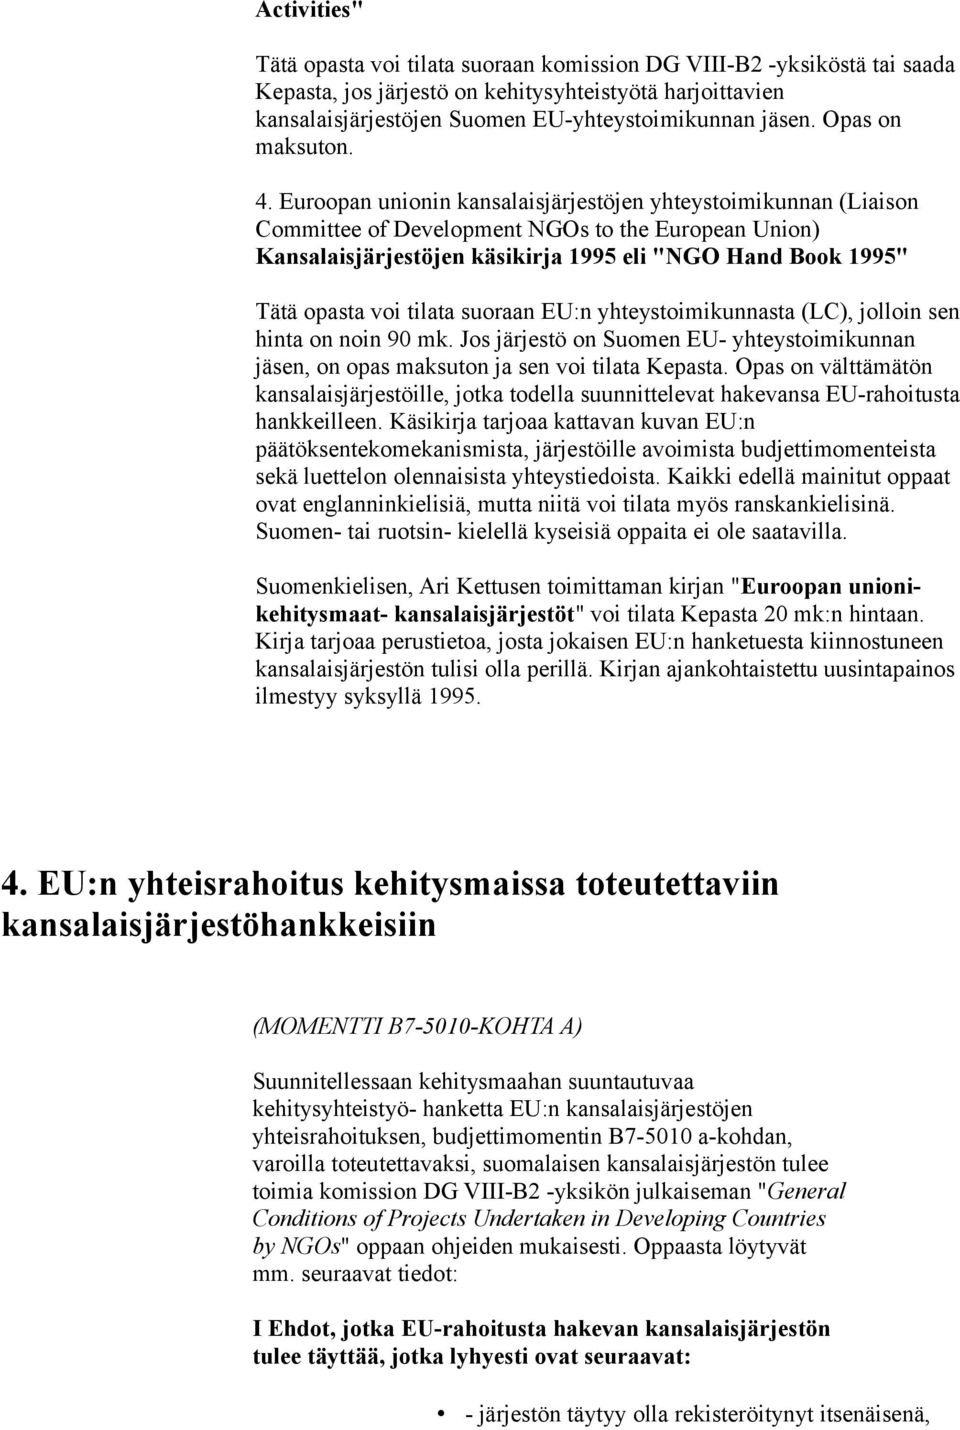 Euroopan unionin kansalaisjärjestöjen yhteystoimikunnan (Liaison Committee of Development NGOs to the European Union) Kansalaisjärjestöjen käsikirja 1995 eli "NGO Hand Book 1995" Tätä opasta voi